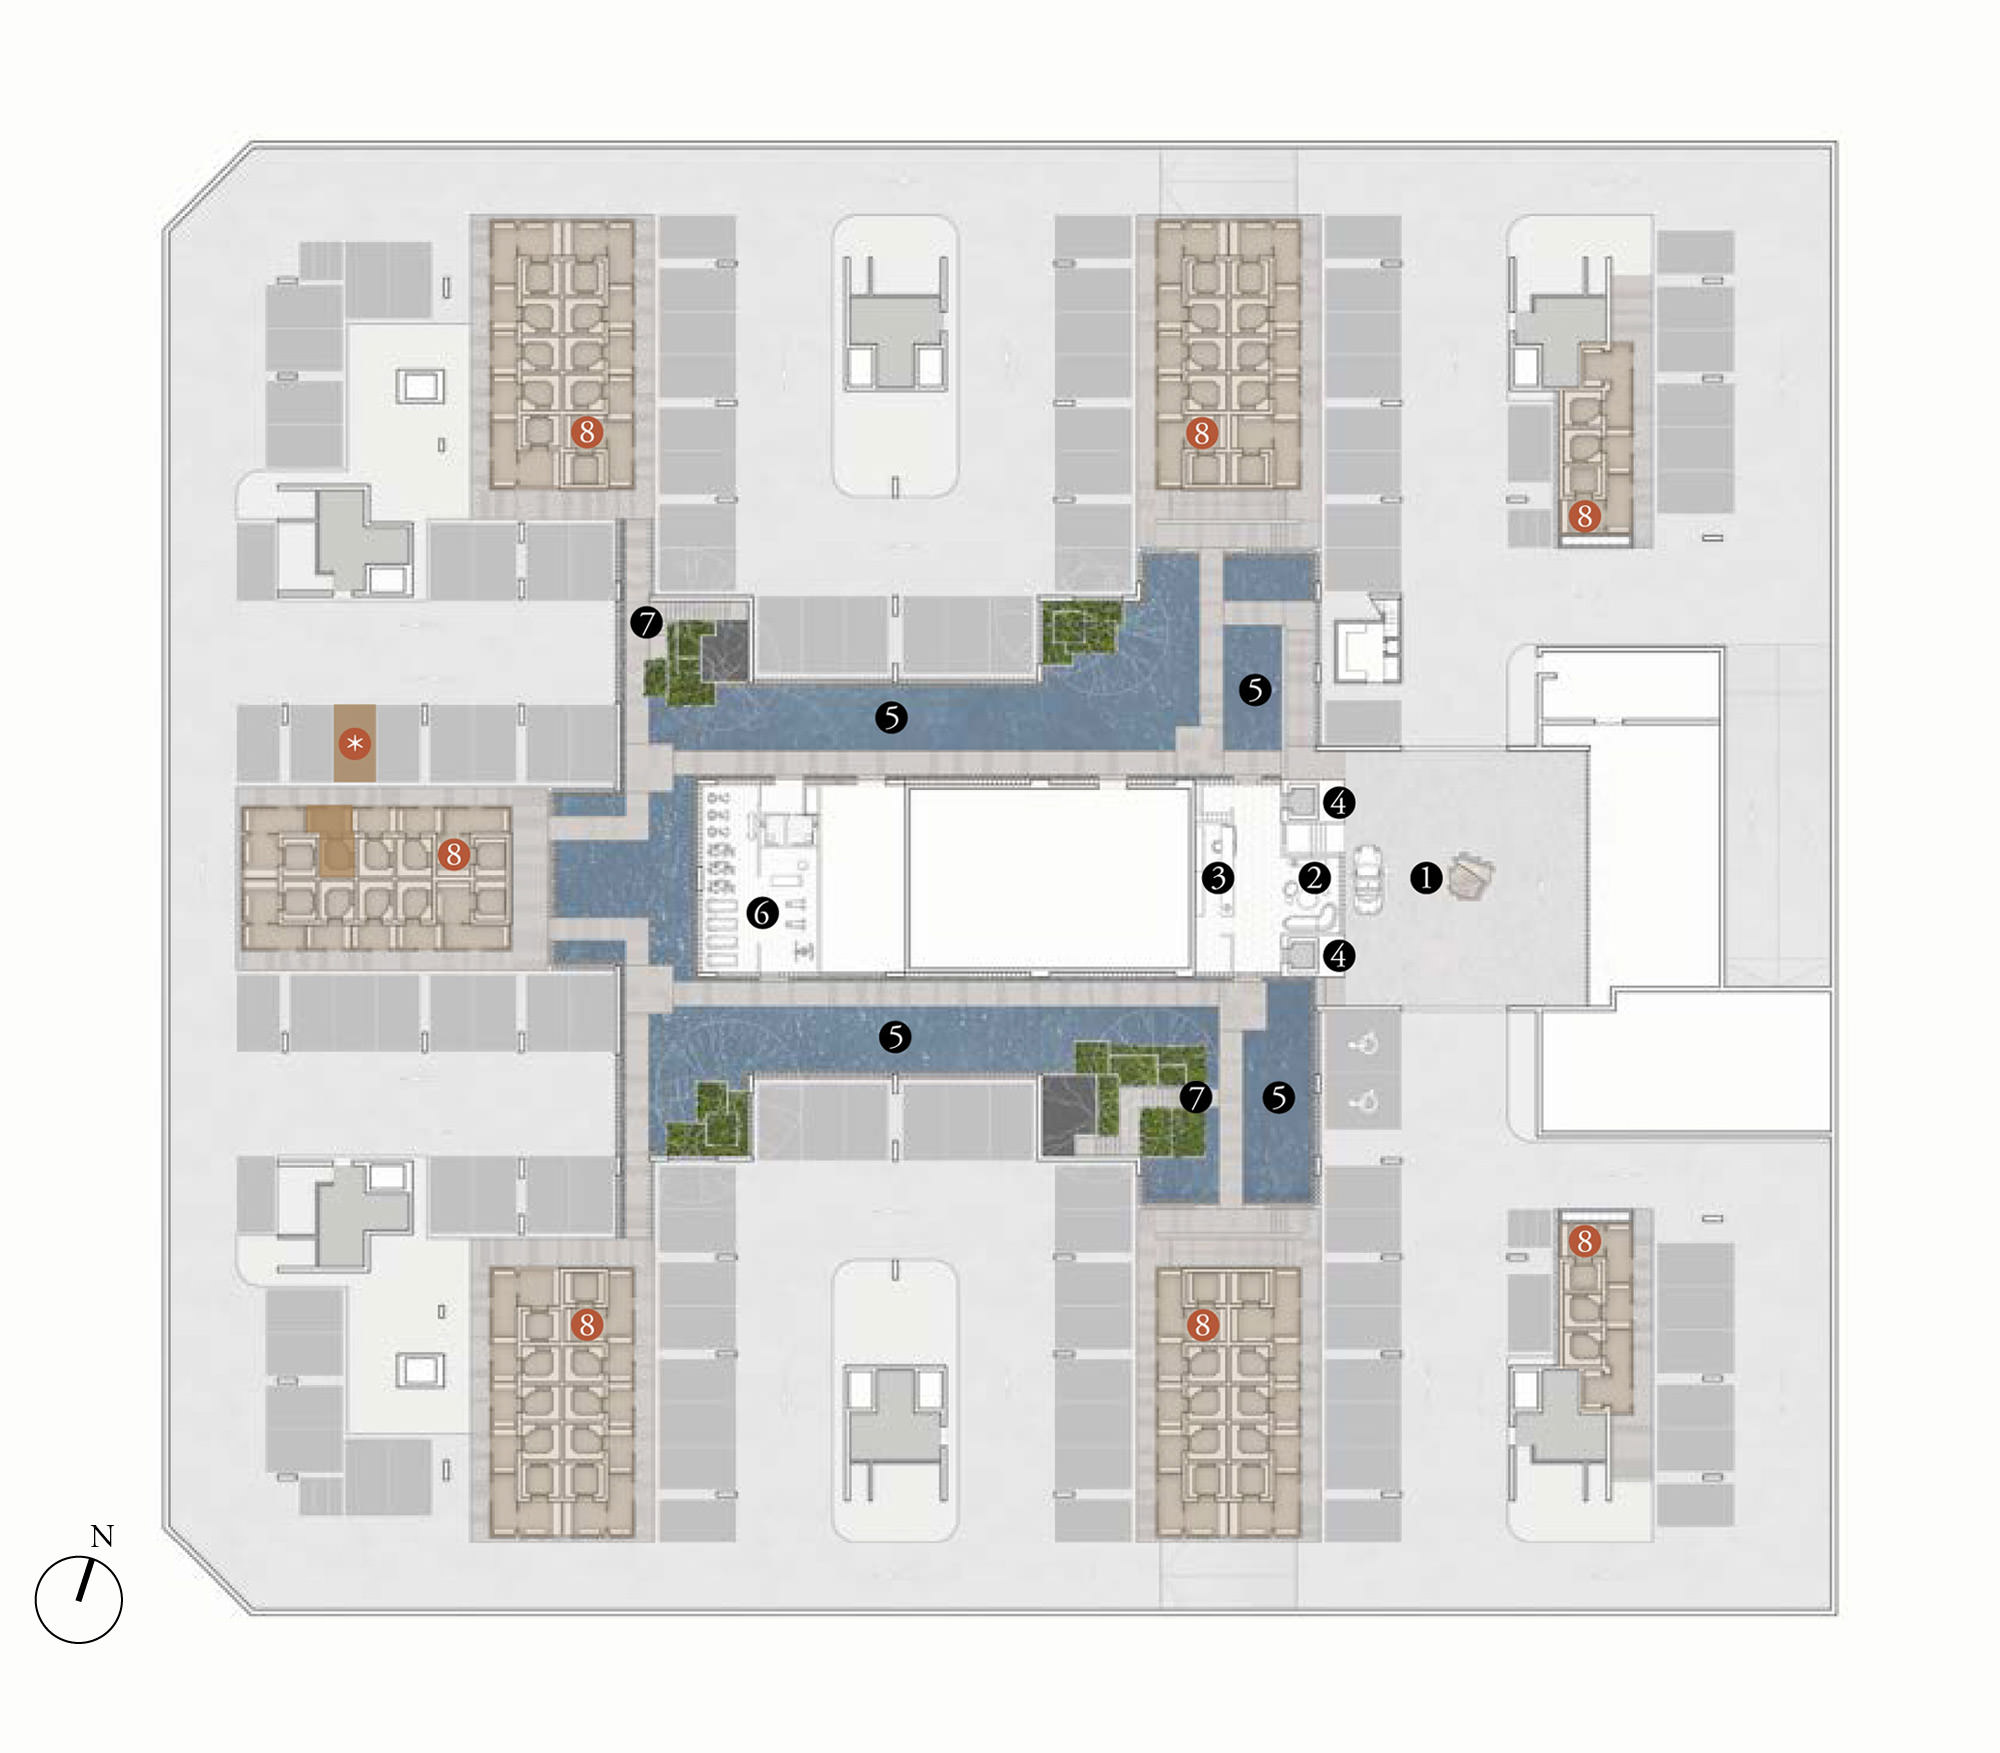 Site Plan 2 - Meyerhouse